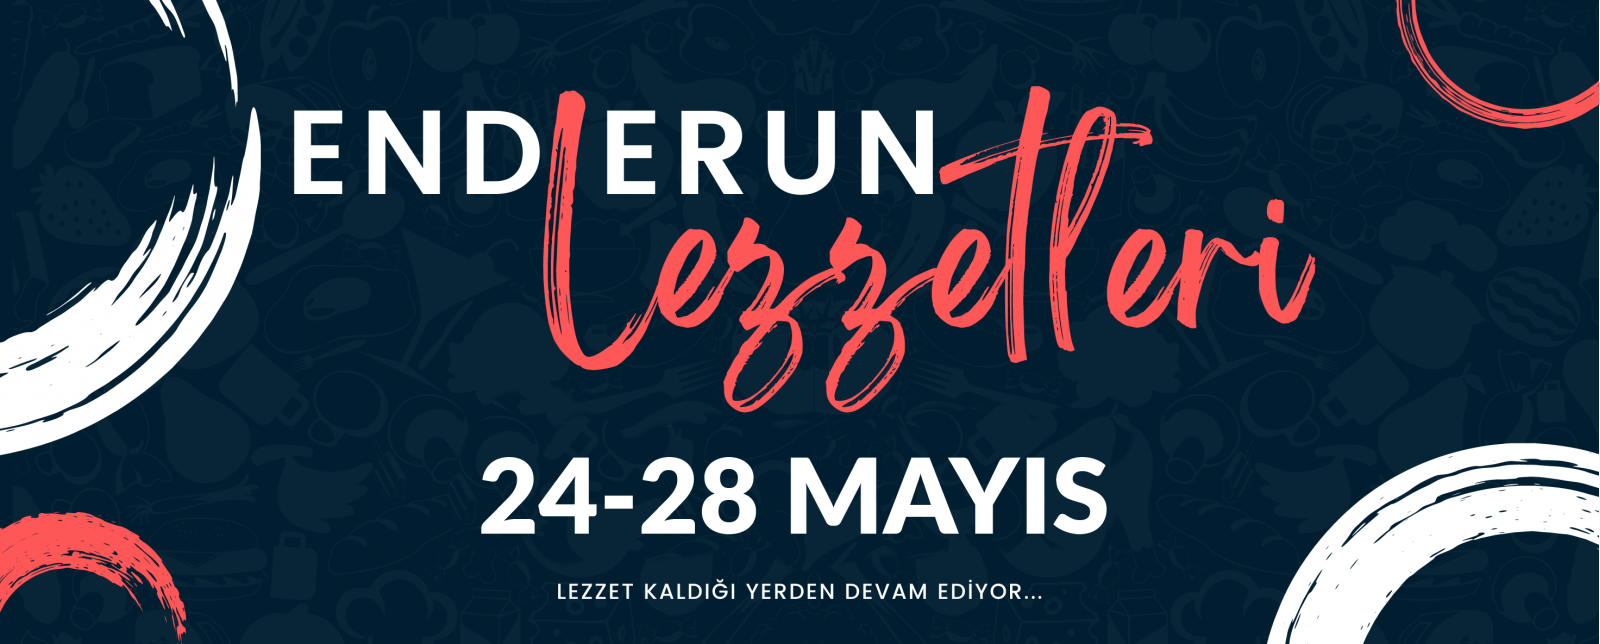 Açılış 24 Mayıs, Enderun Lezzetleri Ziyafet Soframıza Bekliyoruz!